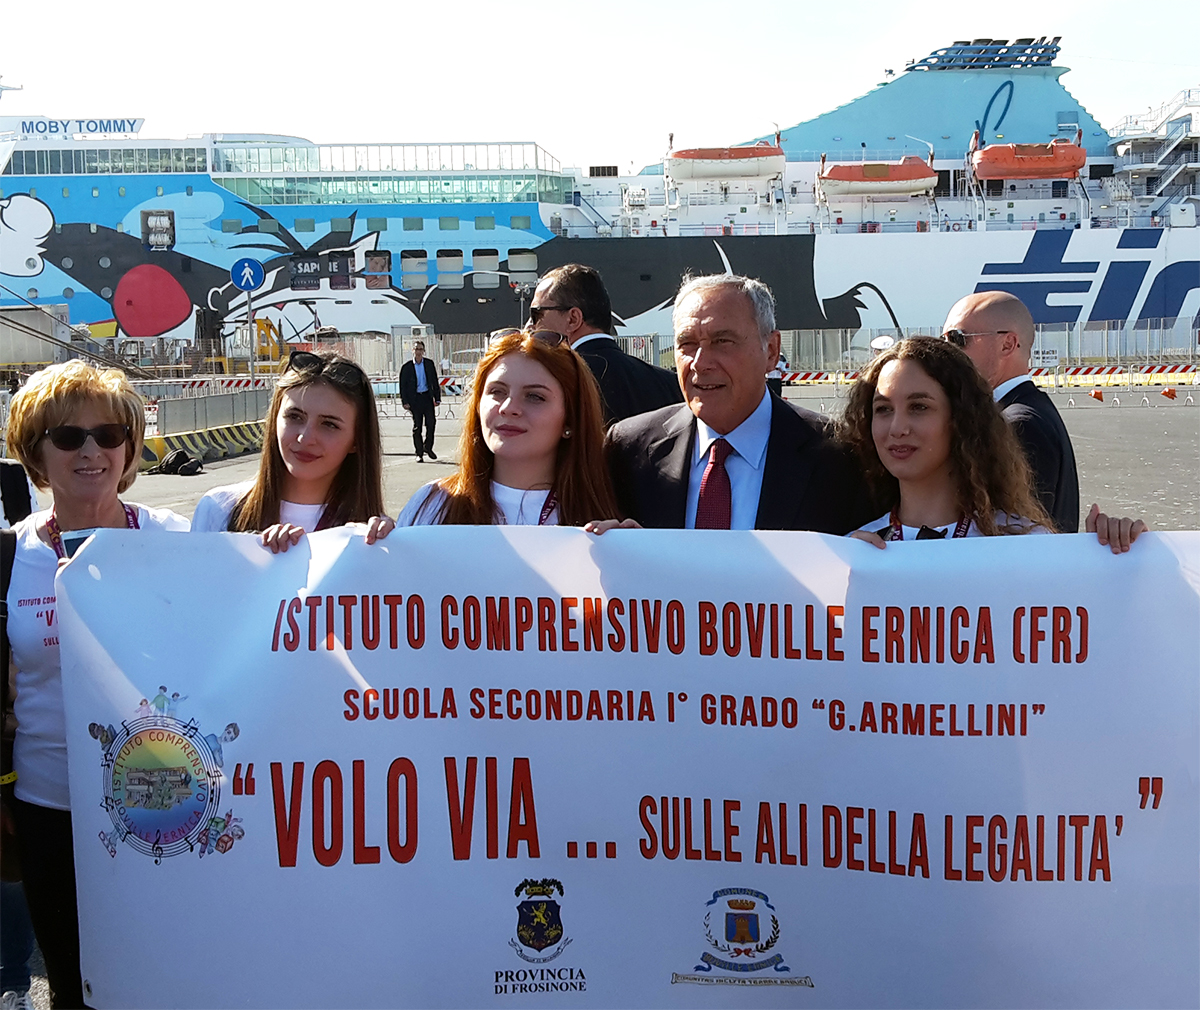 El presidente Pietro Grasso junto a un grupo de estudiantes en el Puerto de Civitavecchia